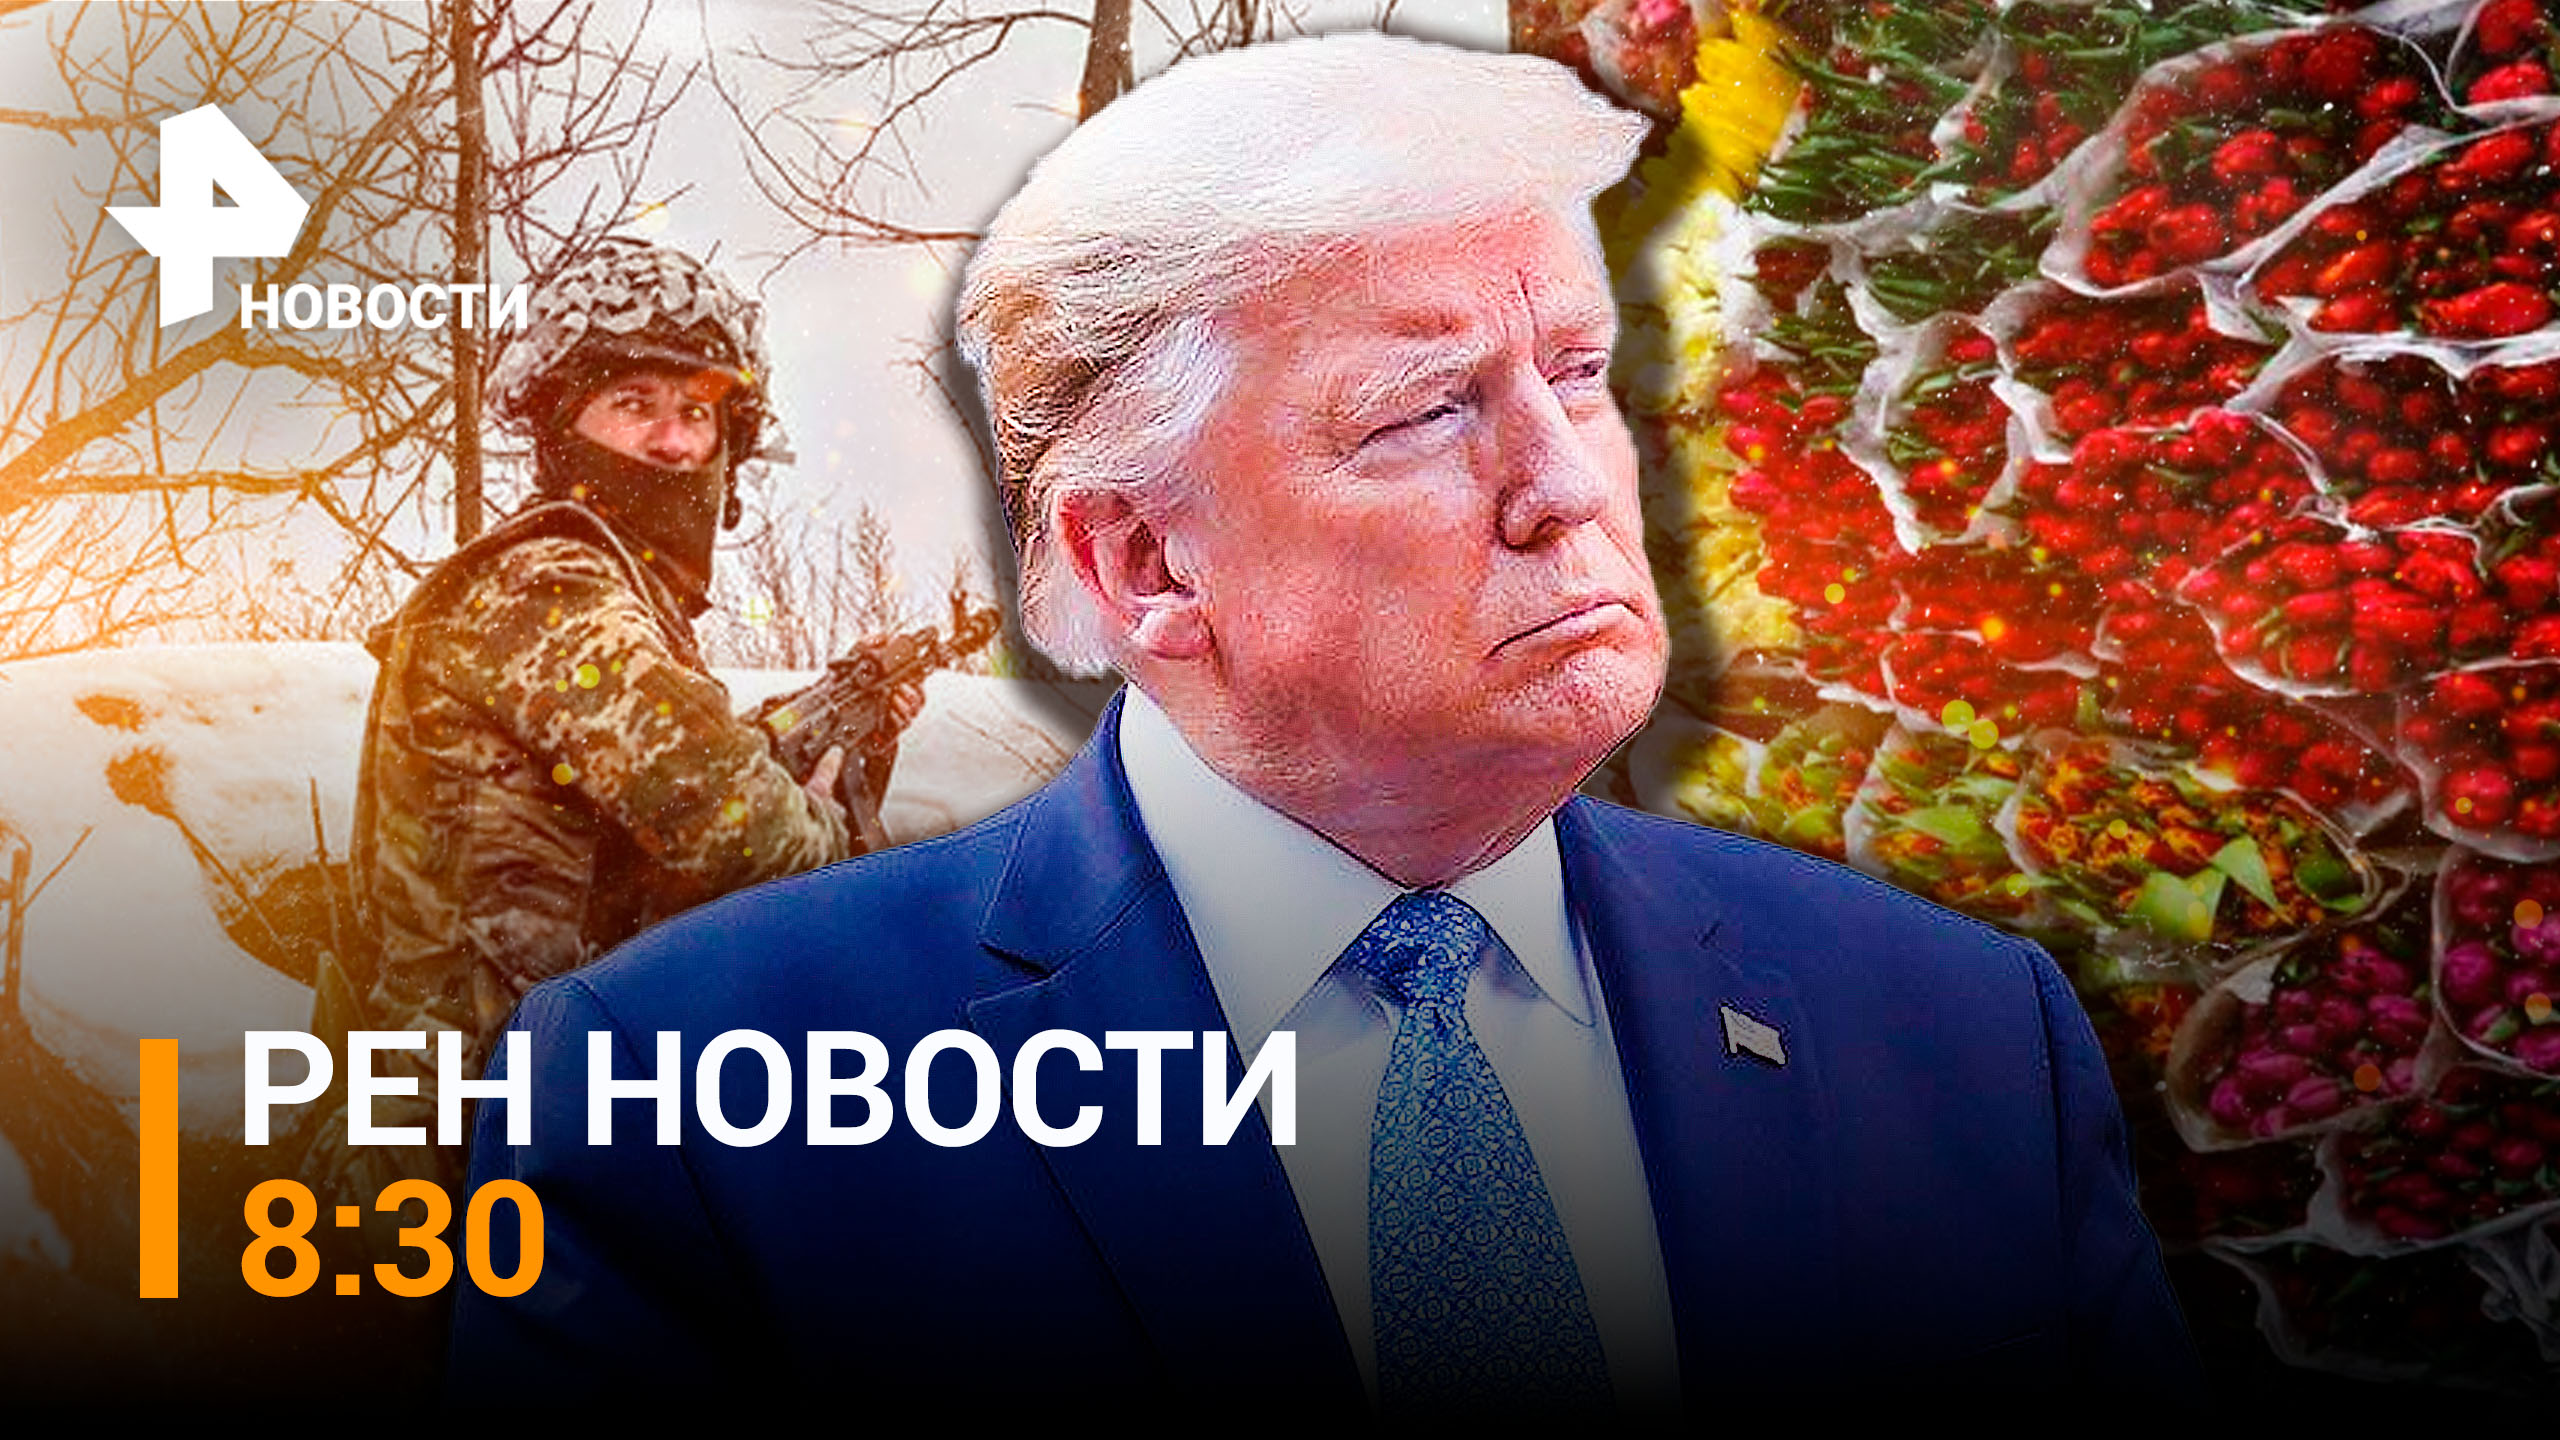 Трамп пообещал изгнать всех сторонников Украины из Белого дома / РЕН ТВ НОВОСТИ 8:30 от 6.03.2023